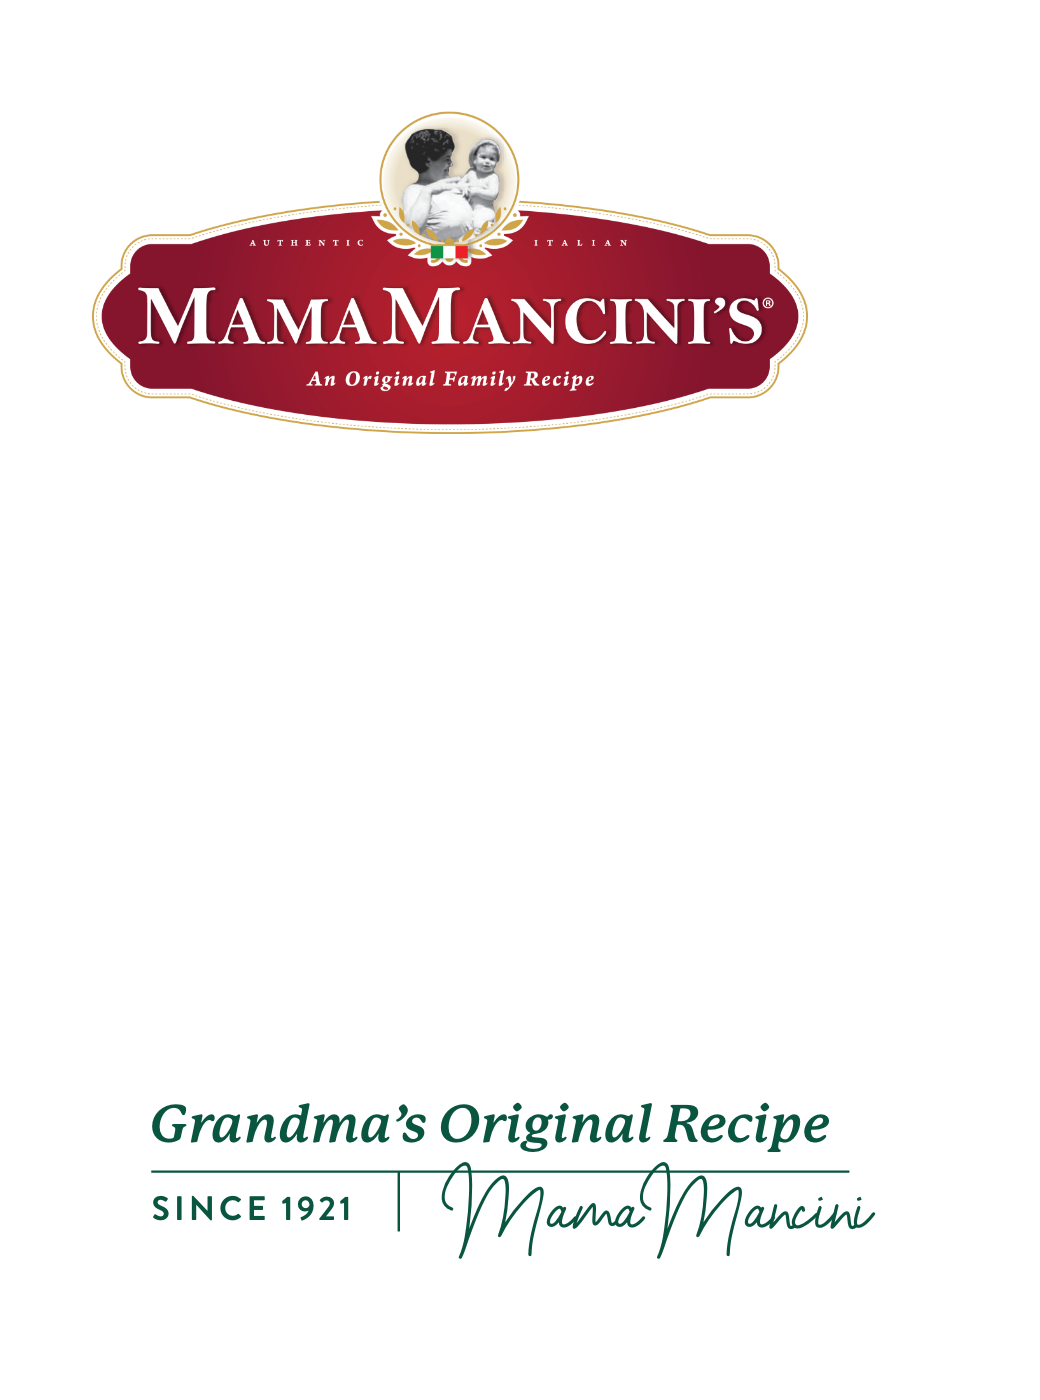 Grandma's Original Family Recipe